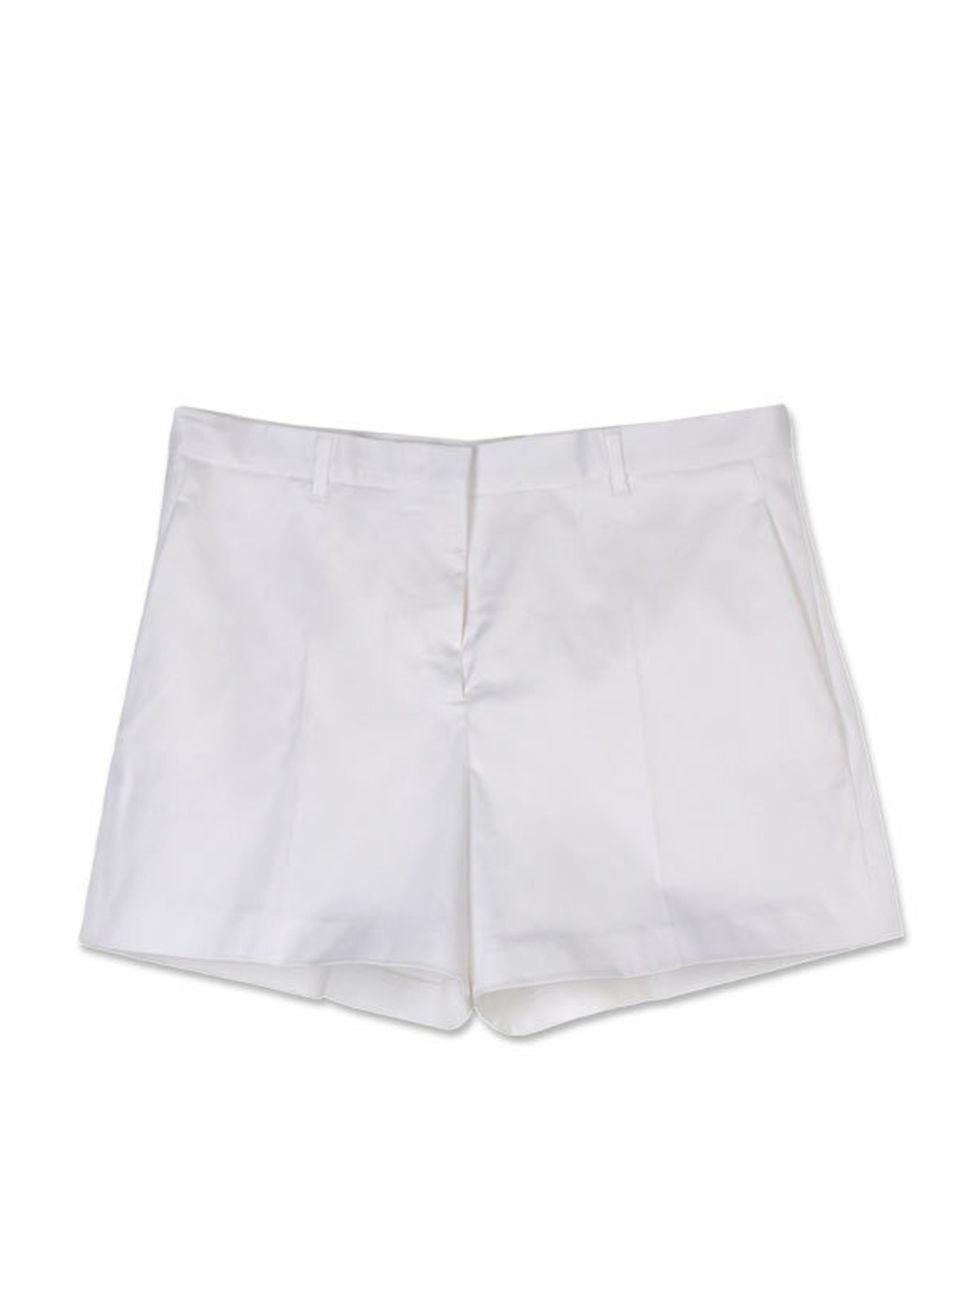 <p>Jil Sander tailored shorts, £290, at <a href="http://www.thecorner.com/item/YOOX/JIL+SANDER/dept/tcwoman/tskay/582B0E9B/rr/1/cod10/36225045AX/sts/sr_tcwoman3">thecorner.com</a></p>